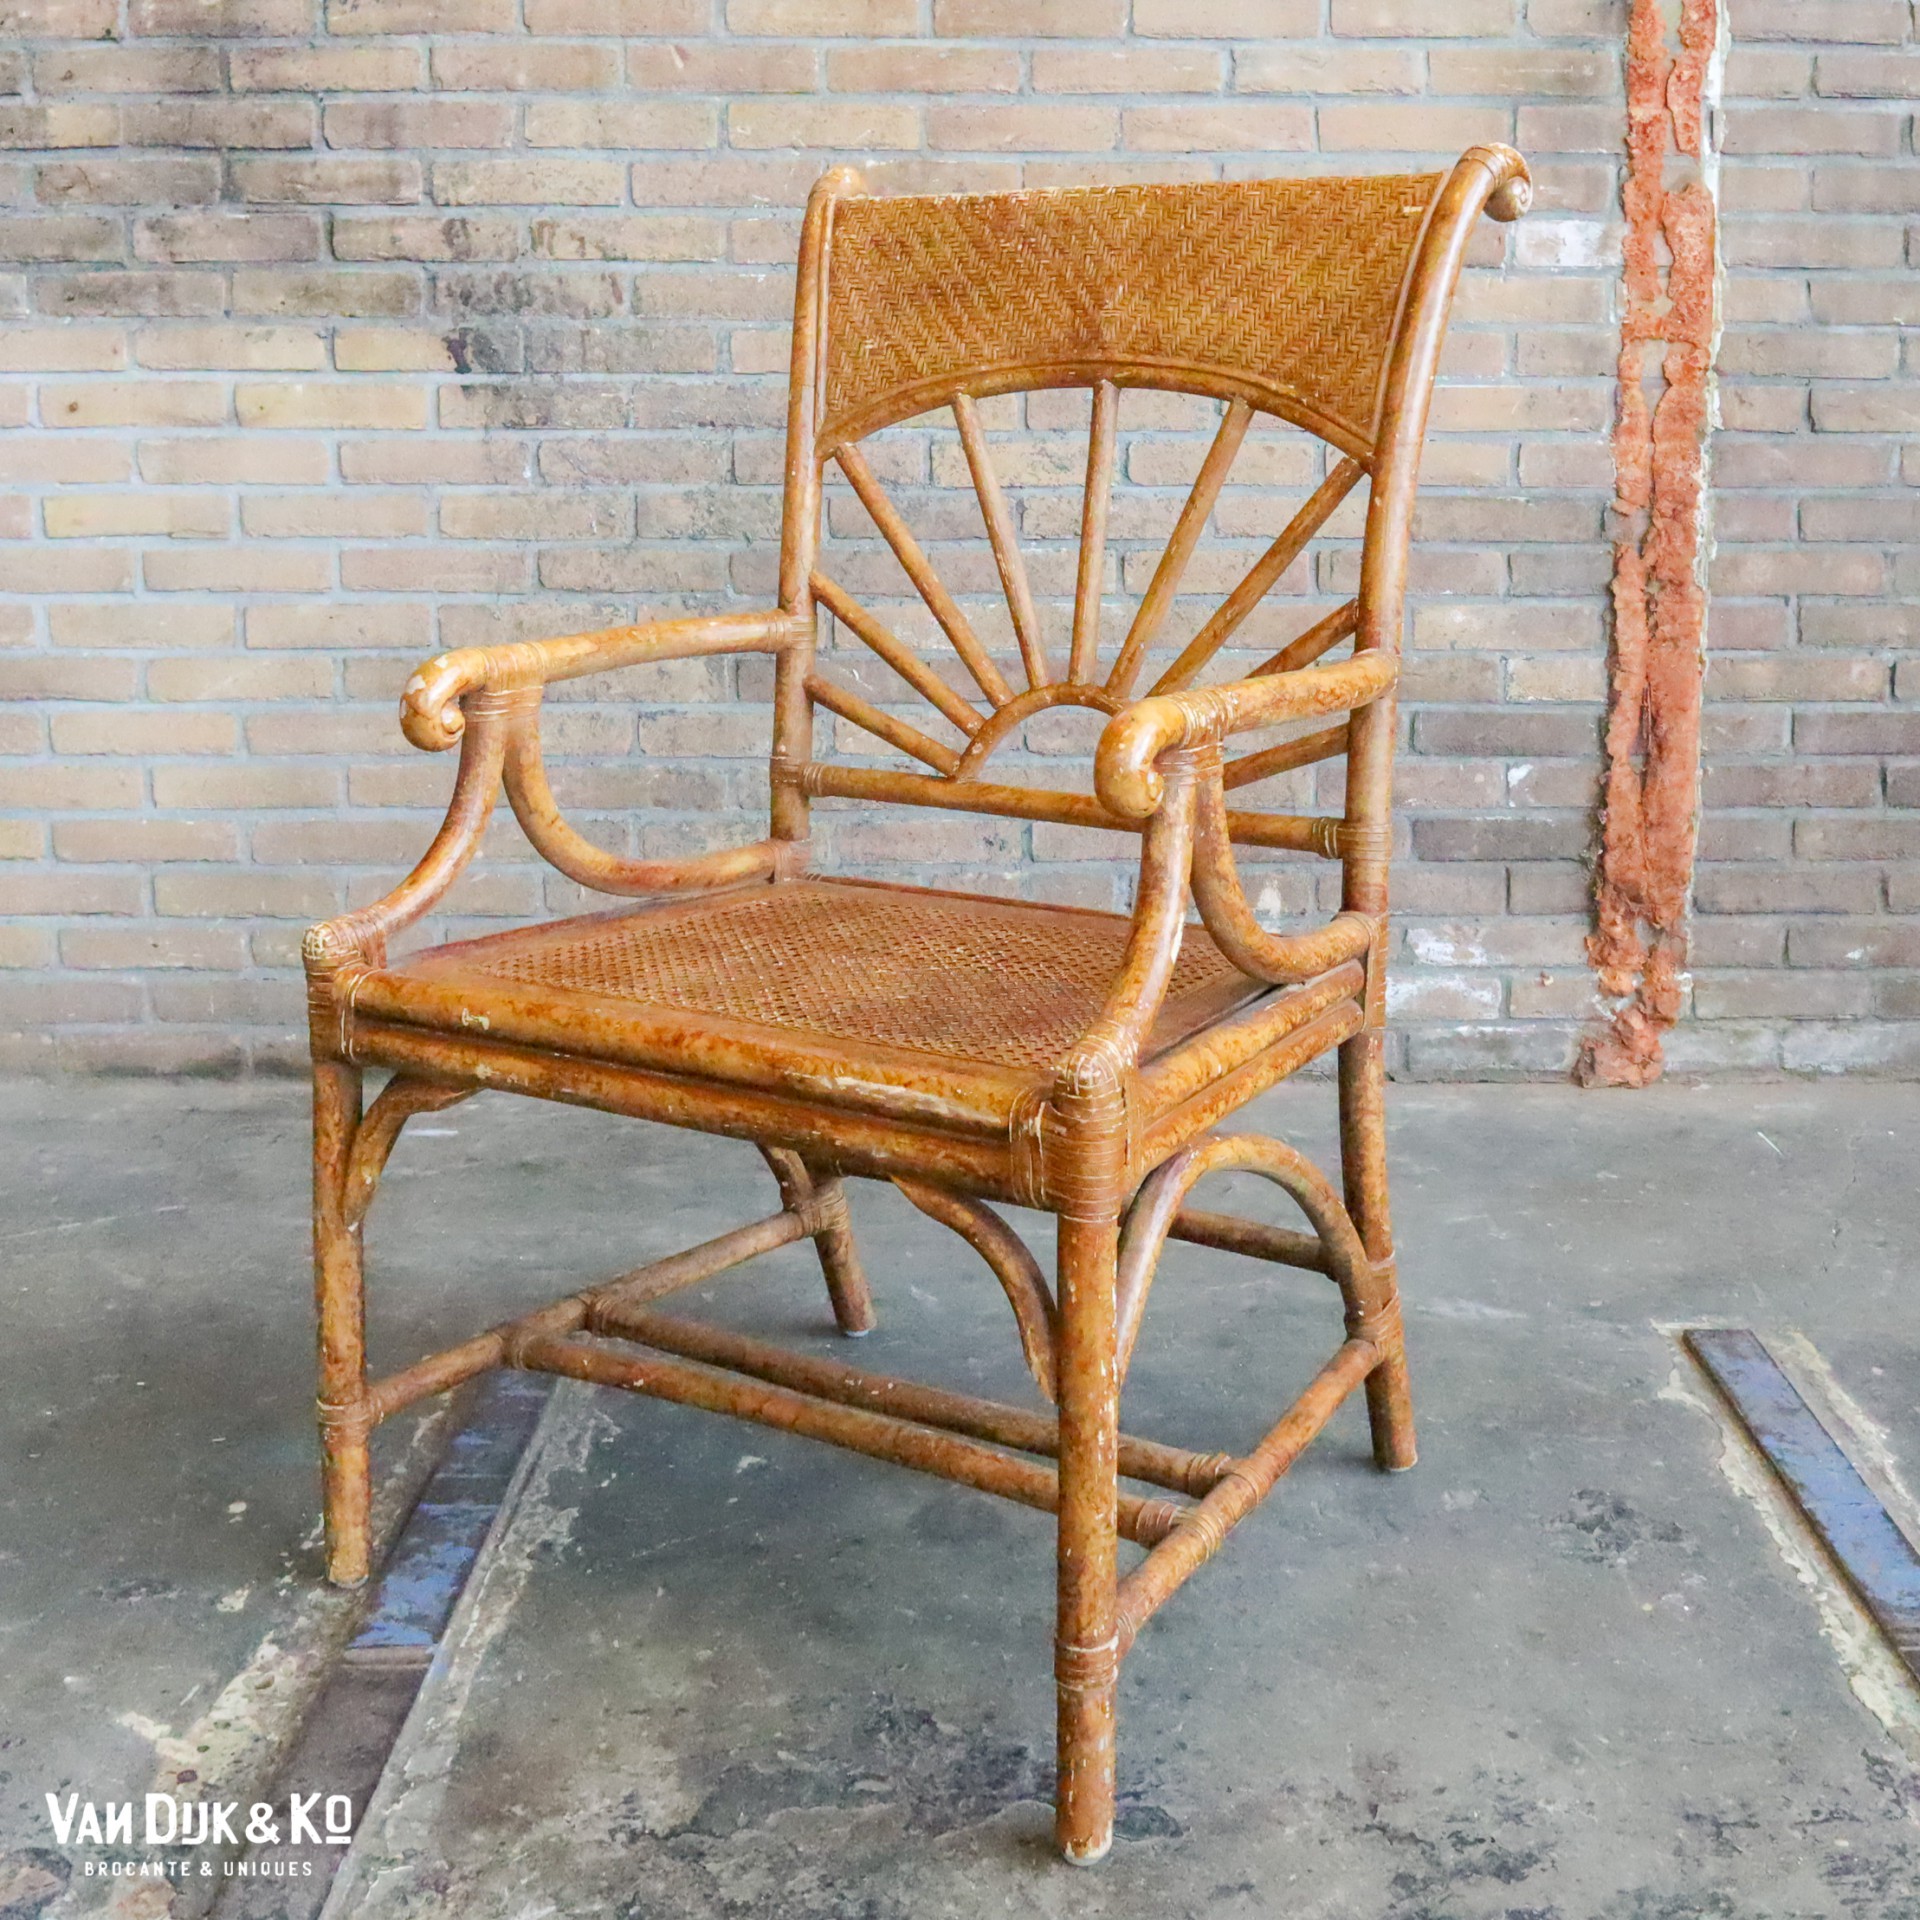 bruid Plak opnieuw Shuraba Vintage rotan stoel » Van Dijk & Ko